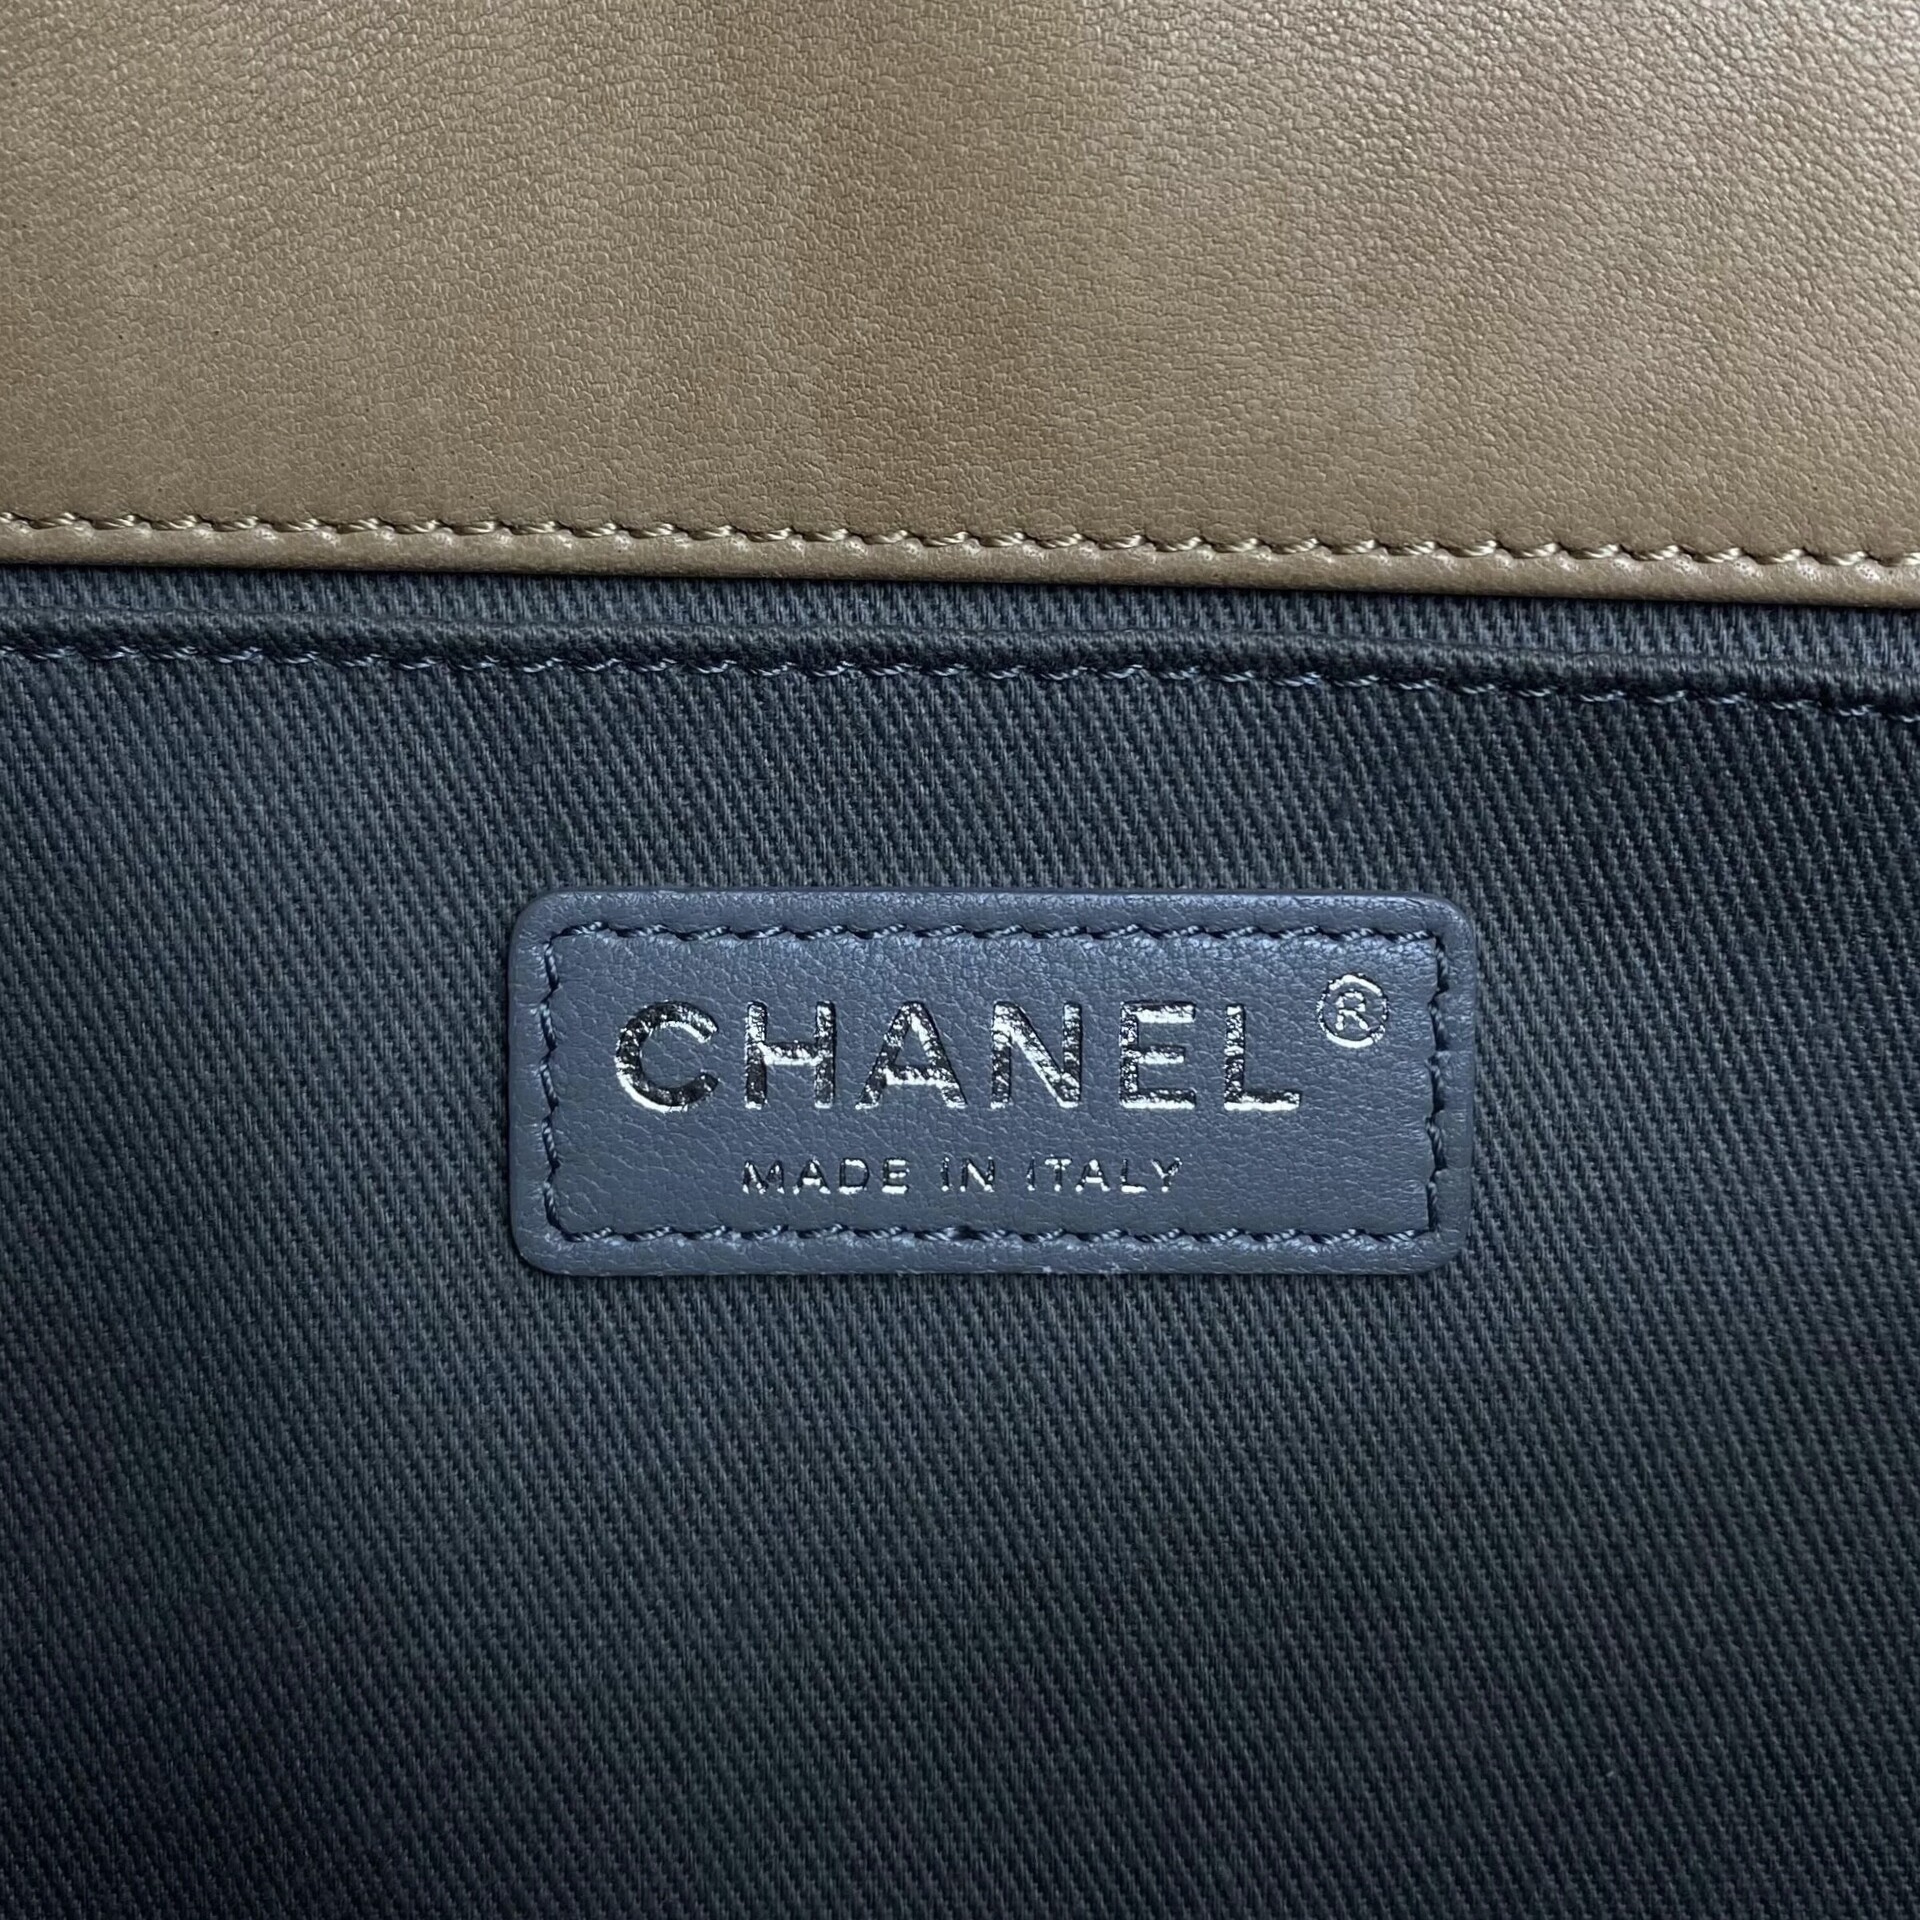 Bolsa Chanel Boy Medium Quilted Bege